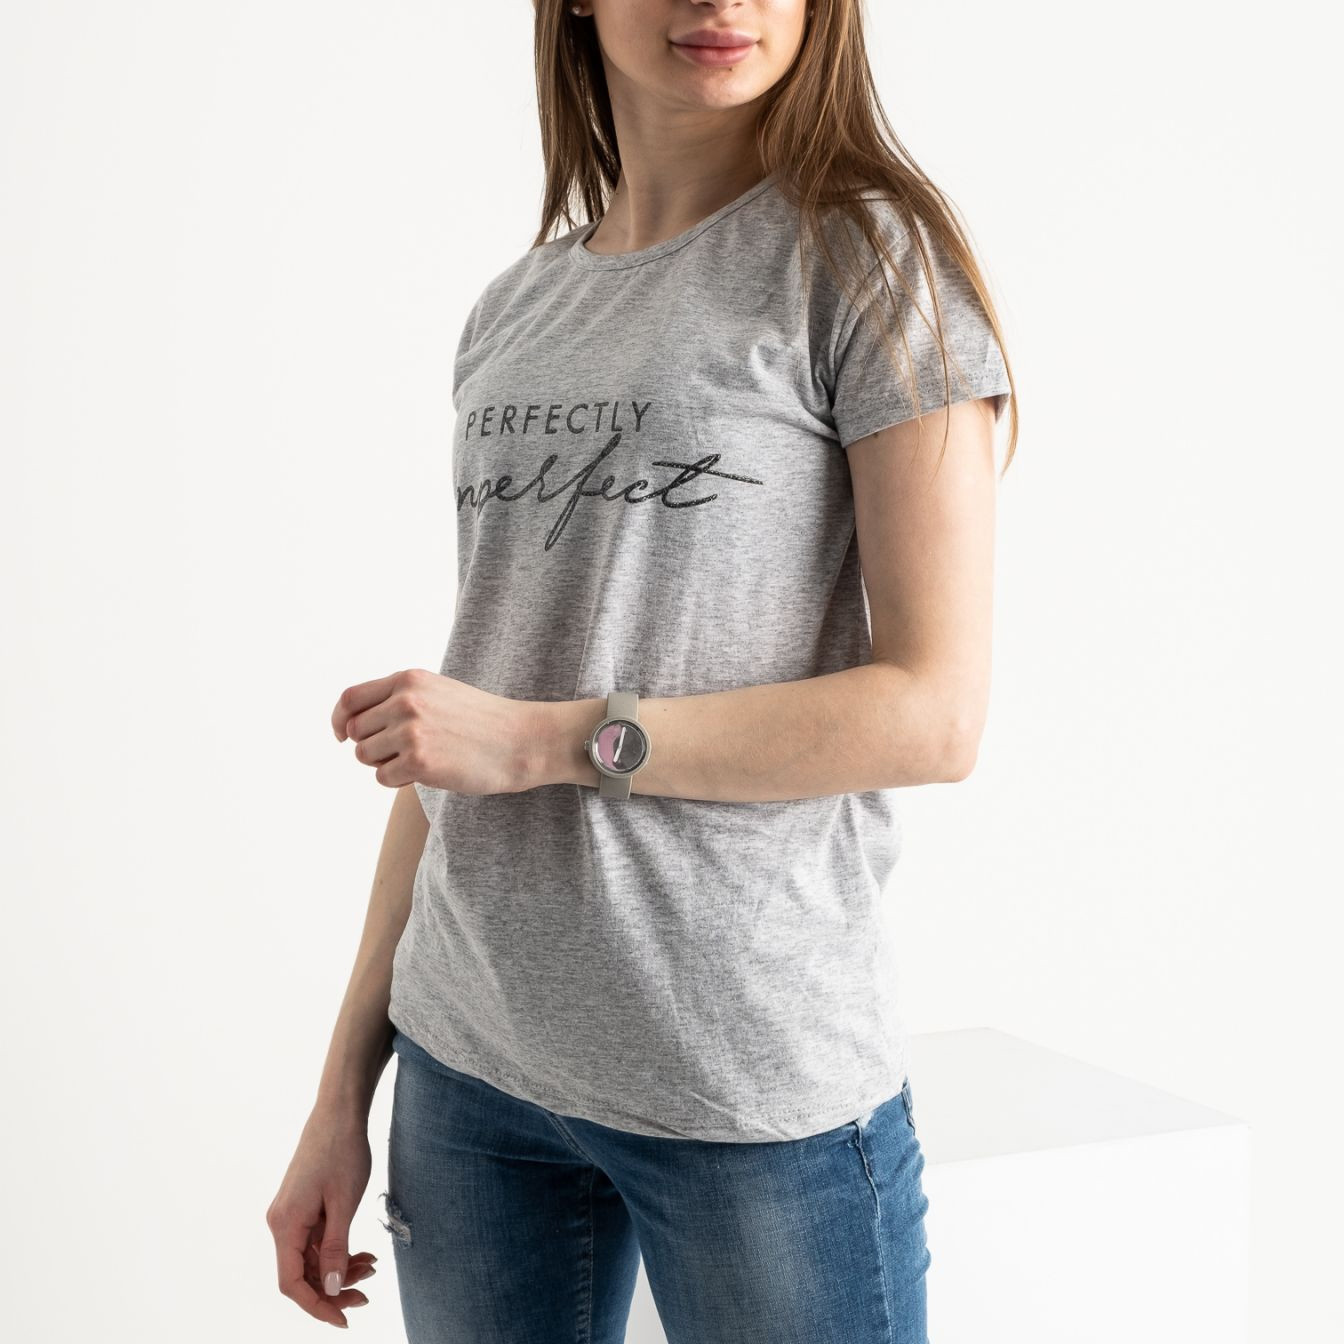 17016-6  FAVORI  СЕРАЯ футболка женская с принтом (3 ед. размеры: S.M.L)